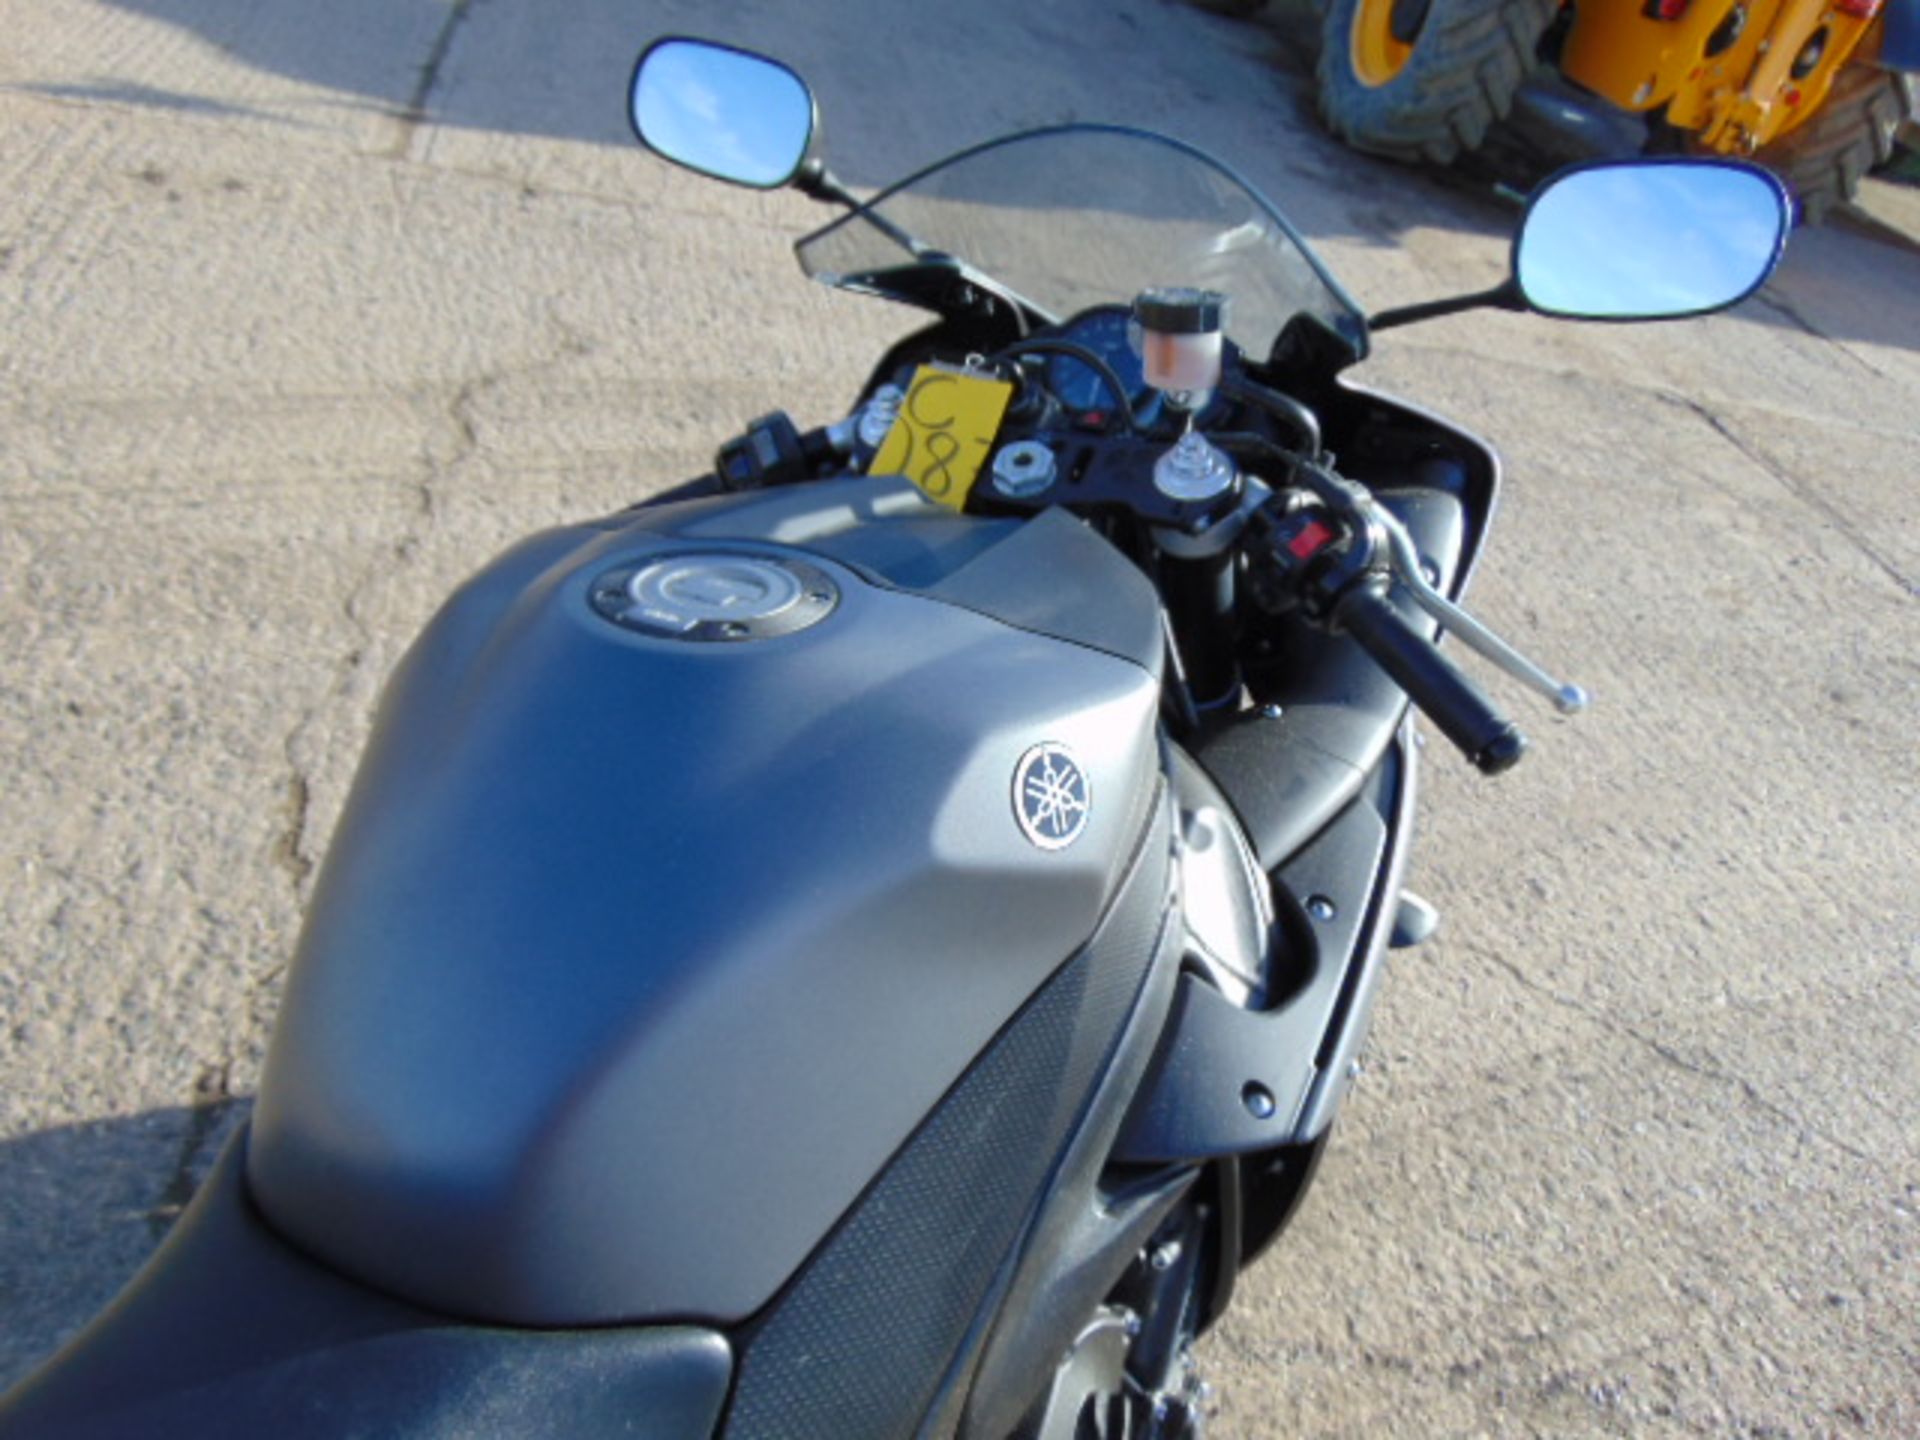 2013 Yamaha YZF-R1 Superbike - Image 11 of 27